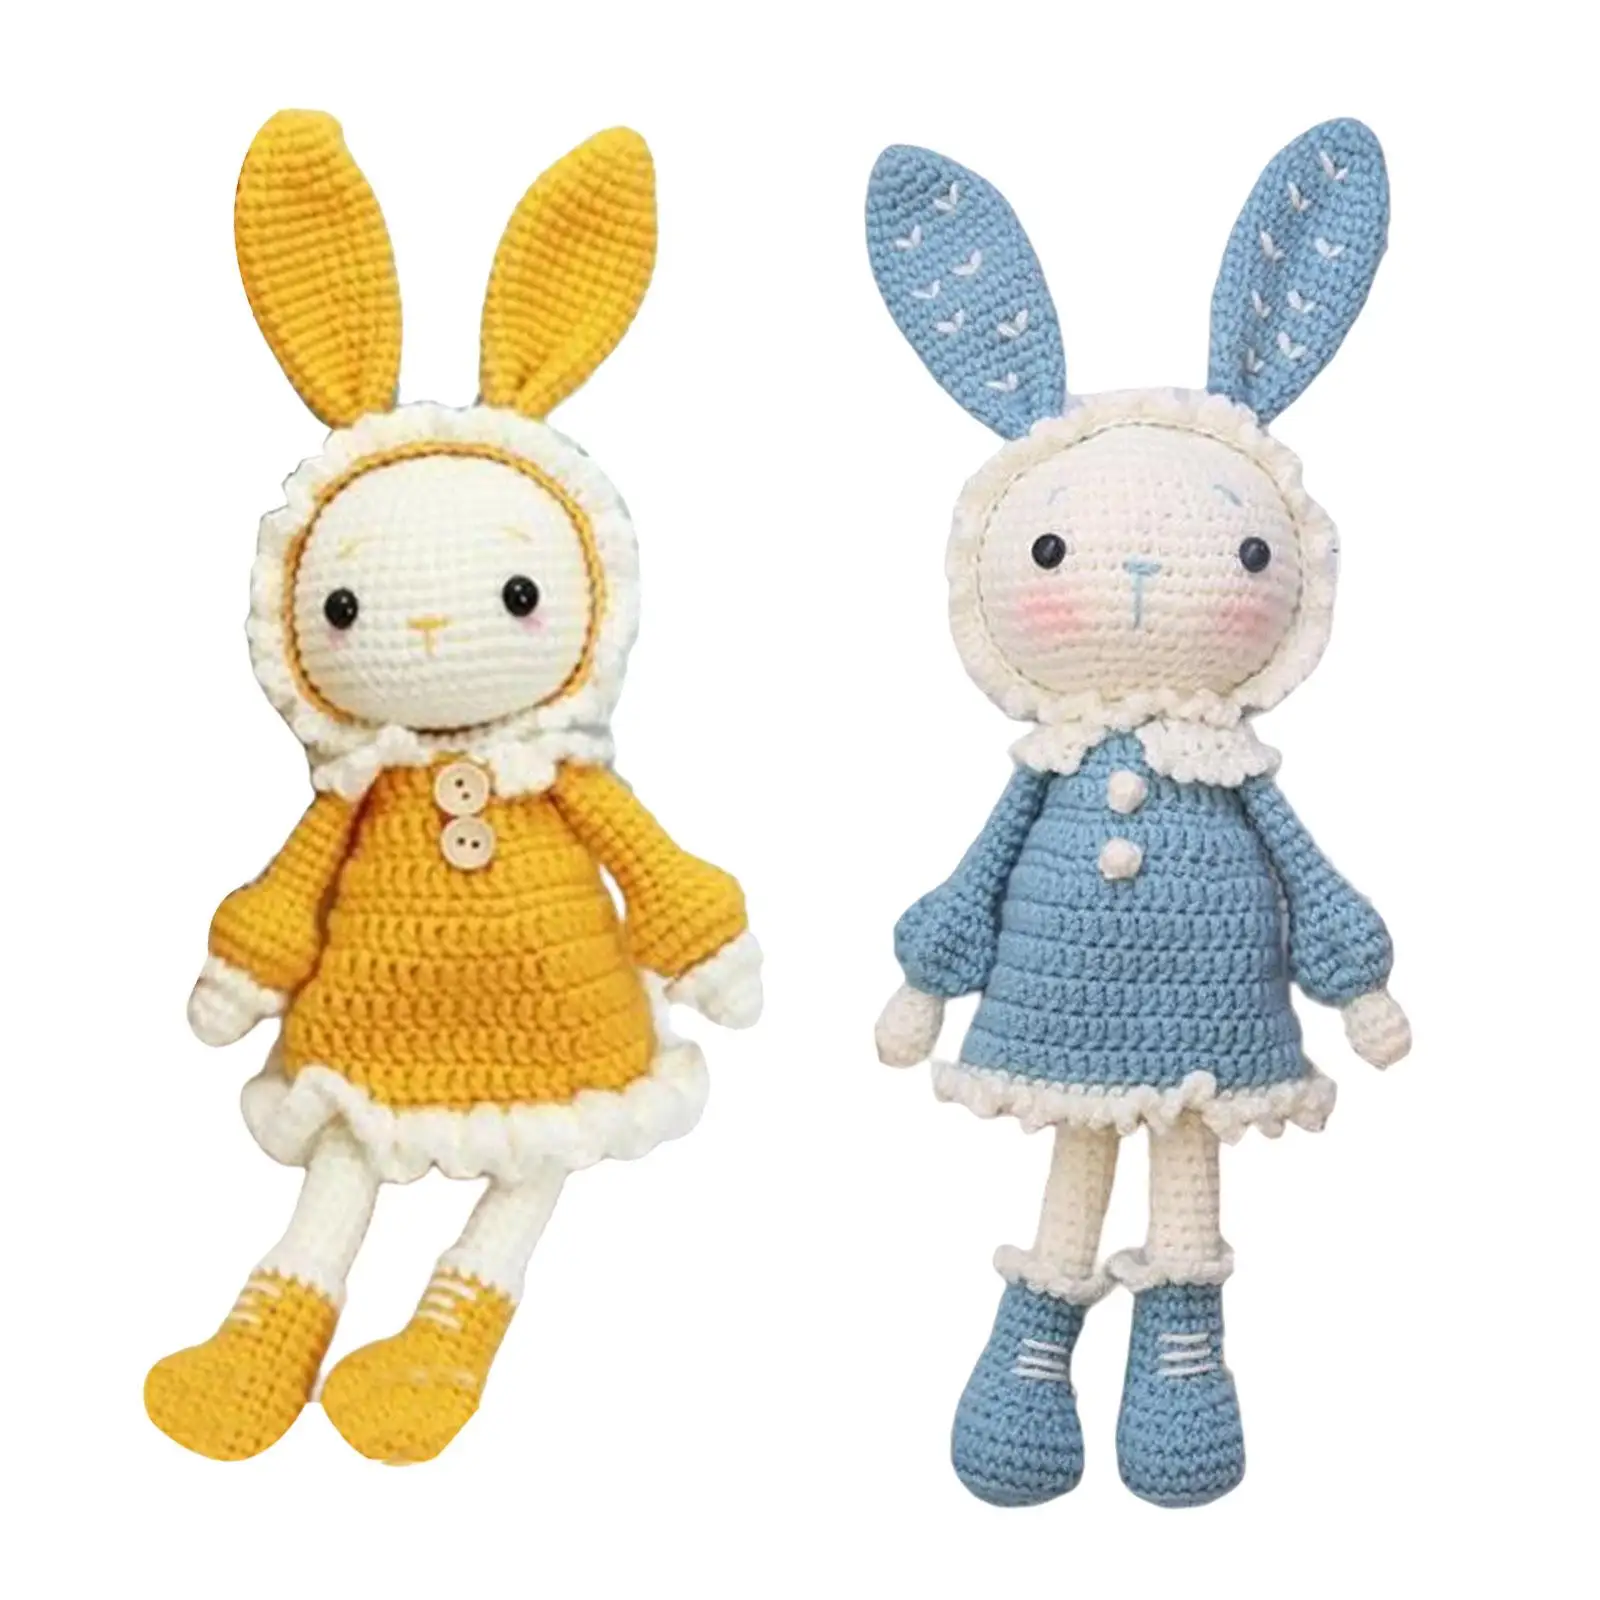 Crochet Kit for Beginners Rabbit Doll for Adults Crochet Craft Set